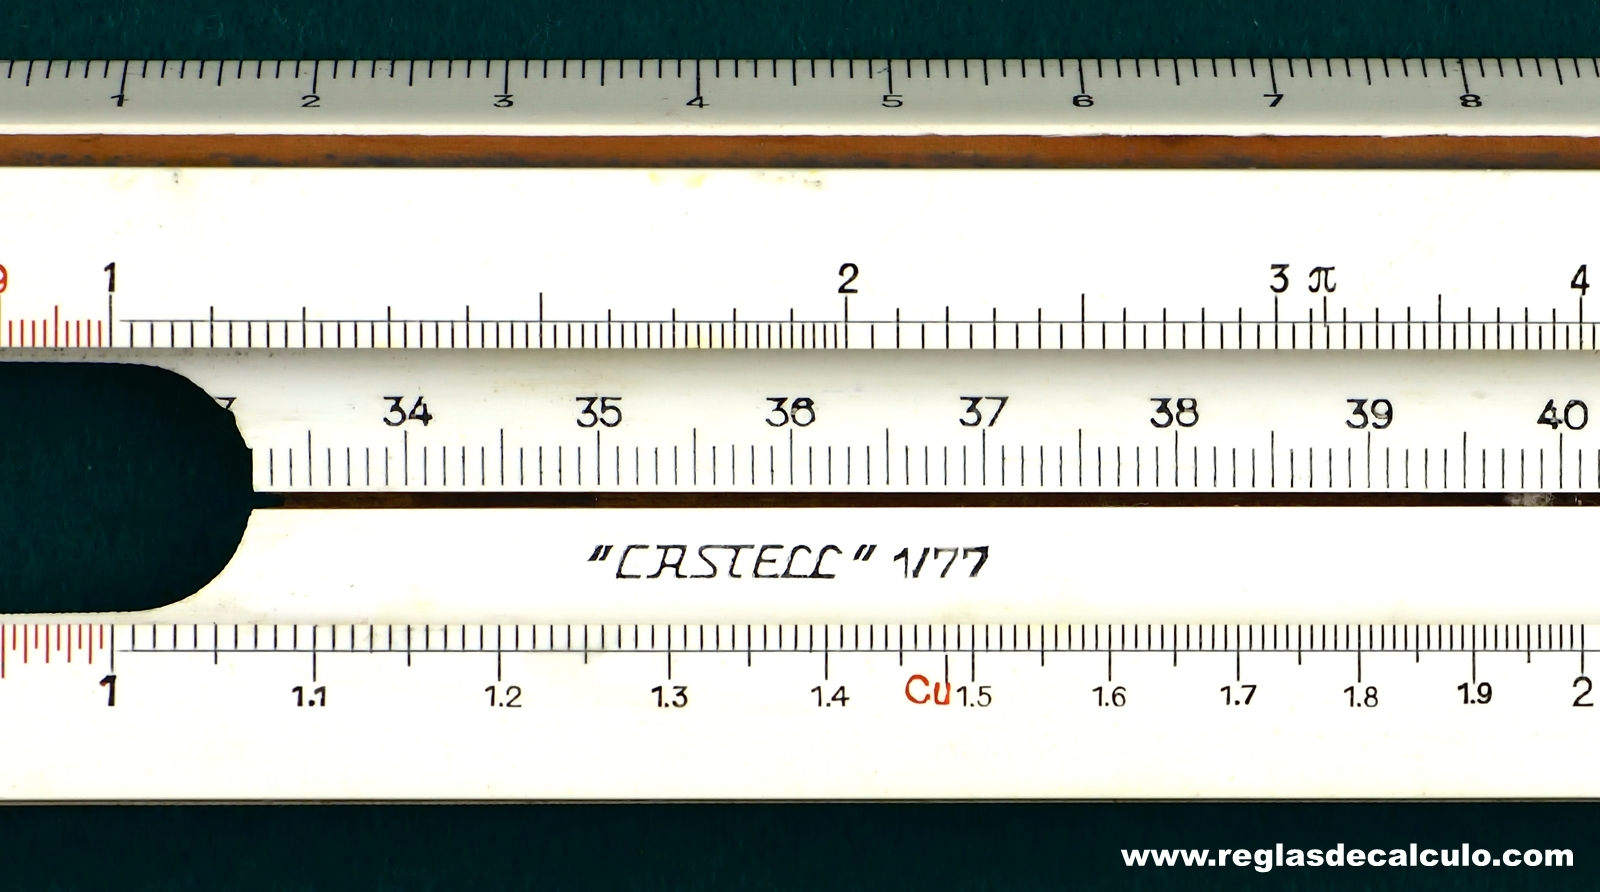 Regla de Calculo Slide rule Faber Castell 1/77